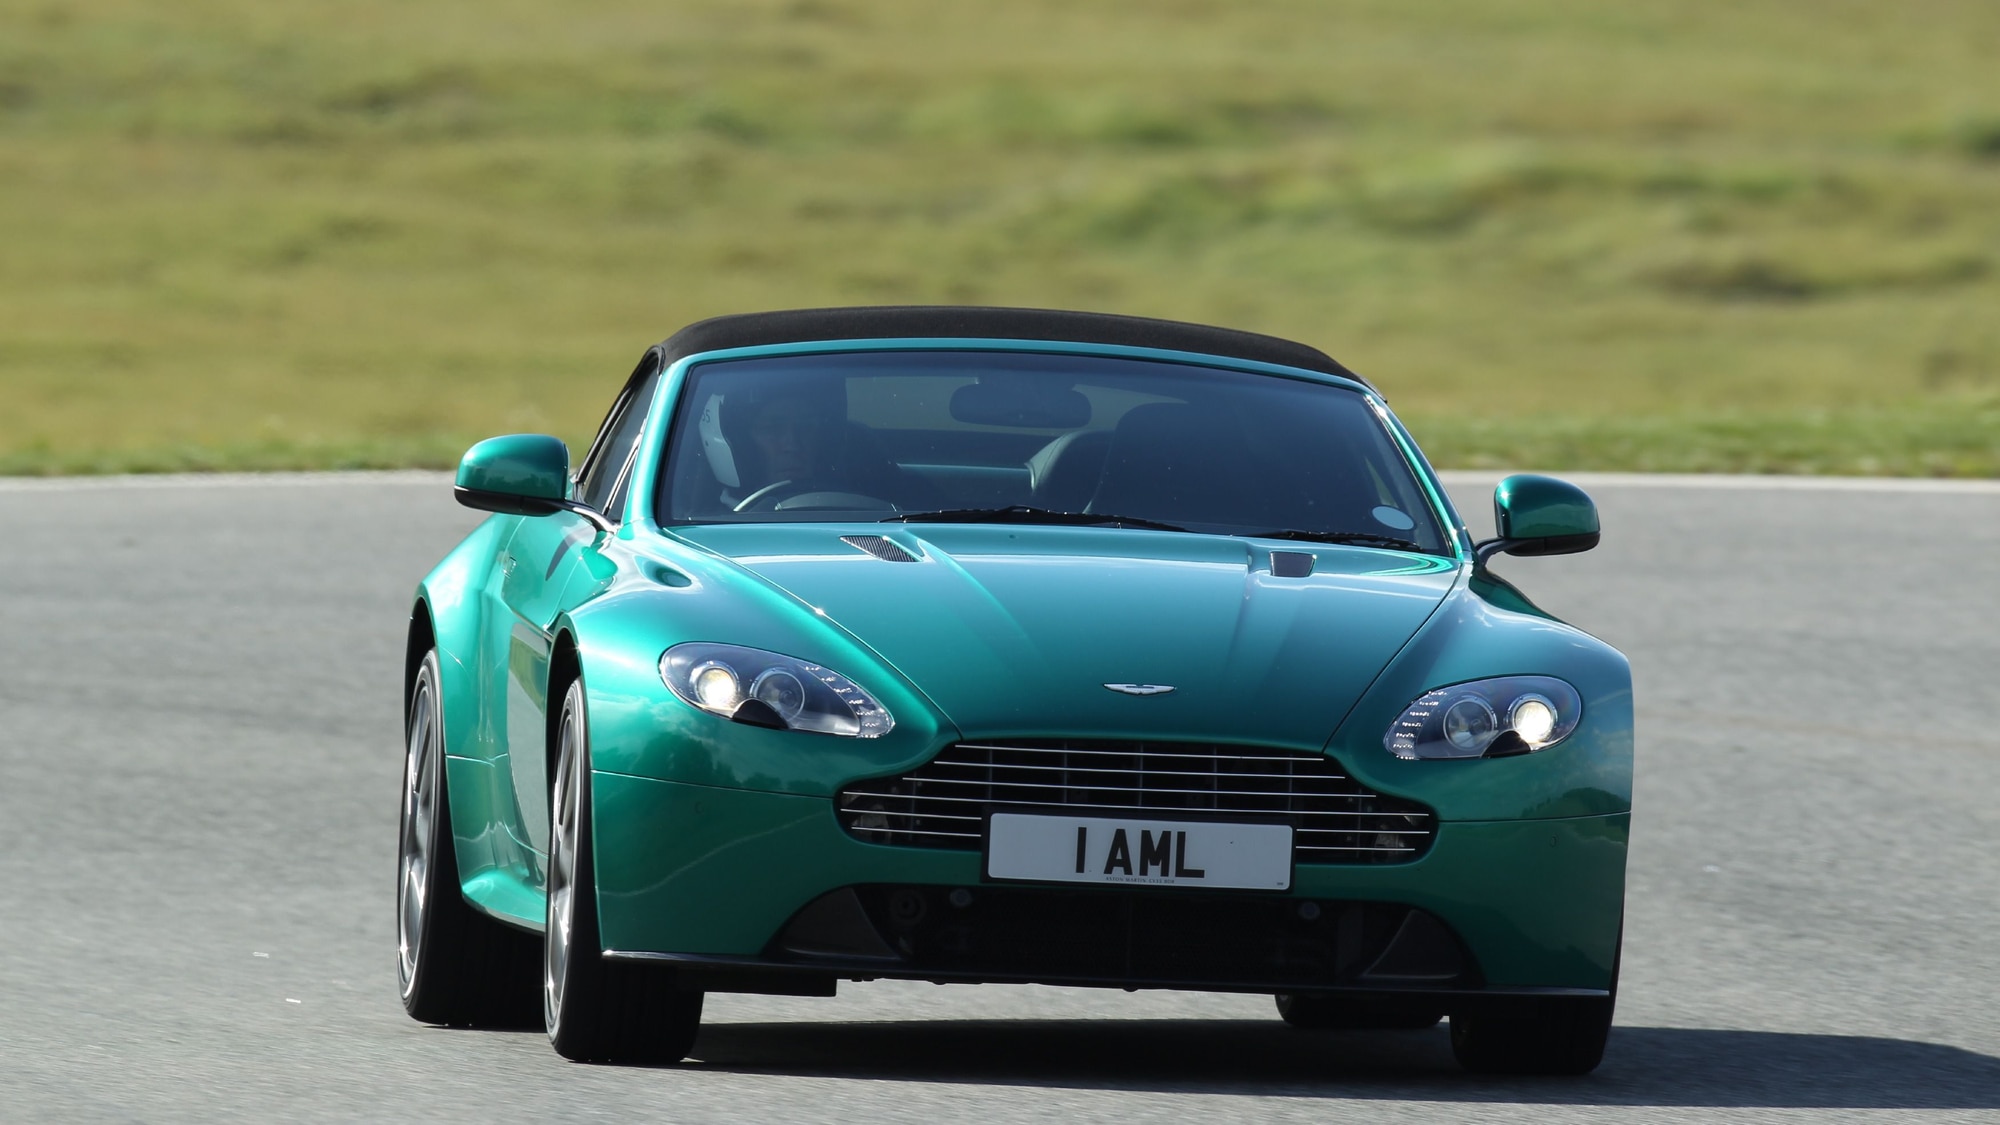 2011 Aston Martin Vantage S: Embargo Drops In 5...Hours